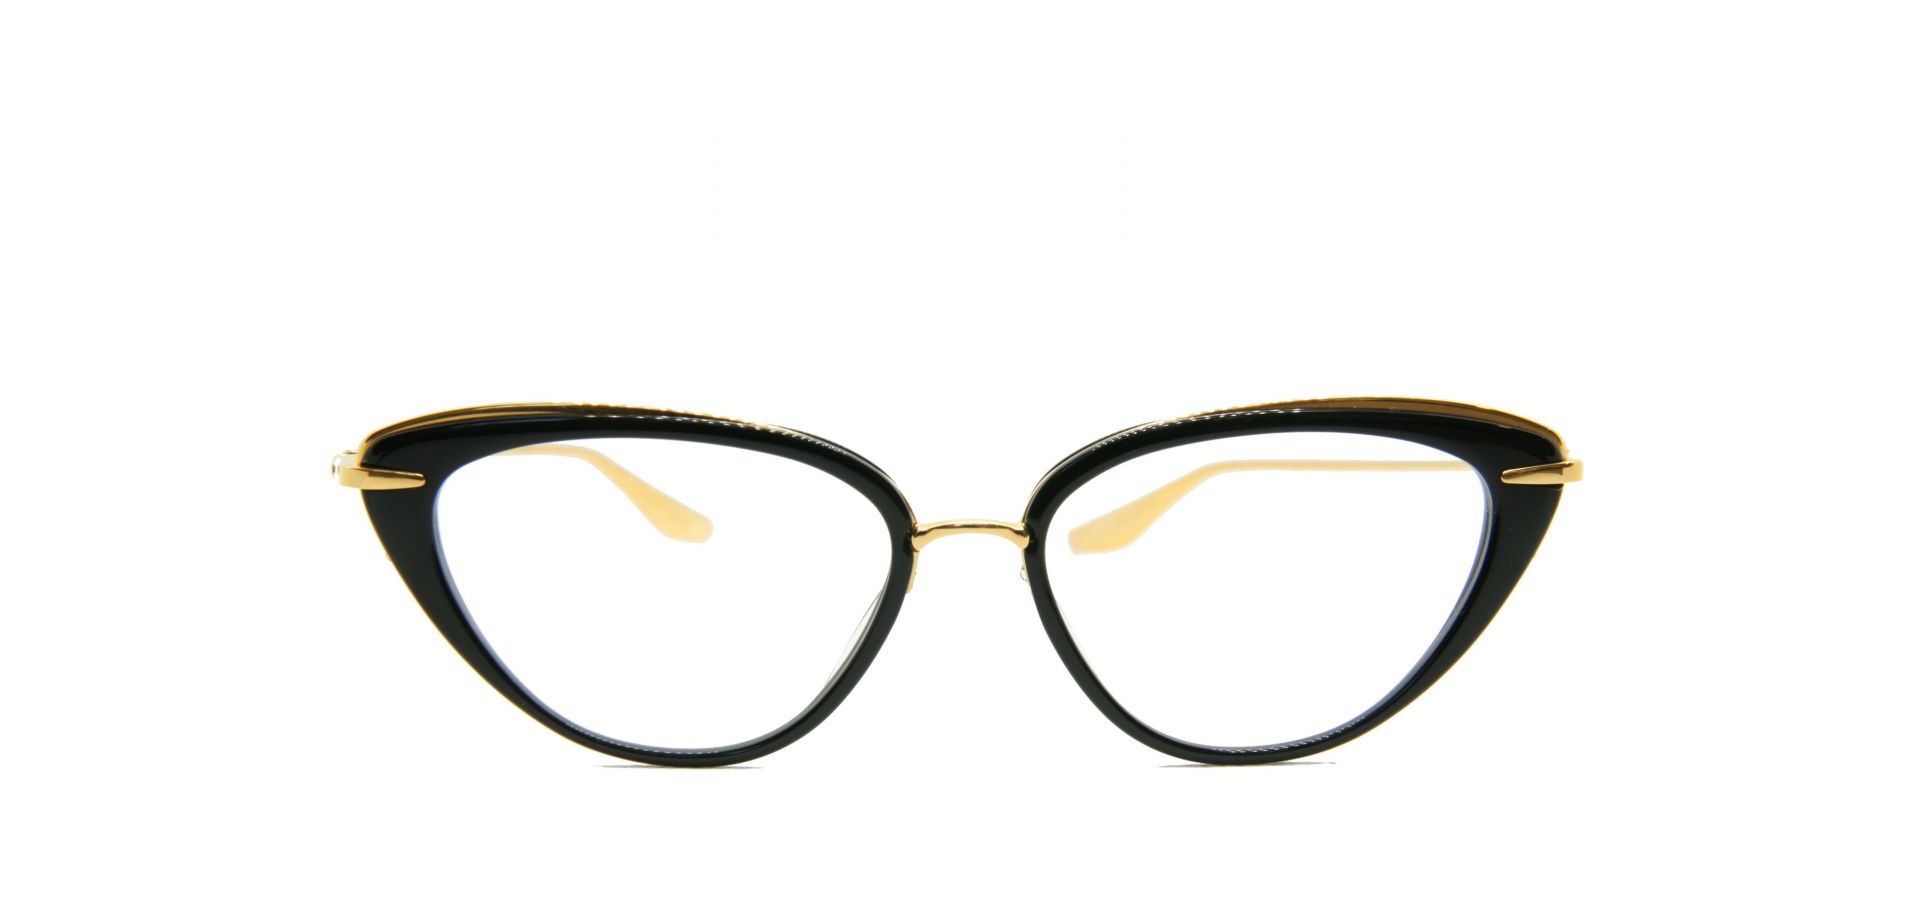 Korekcijska očala Dita LACQUER BLACK GOLD: Velikost: 51/15/139, Spol: ženska, Material: acetat/titan